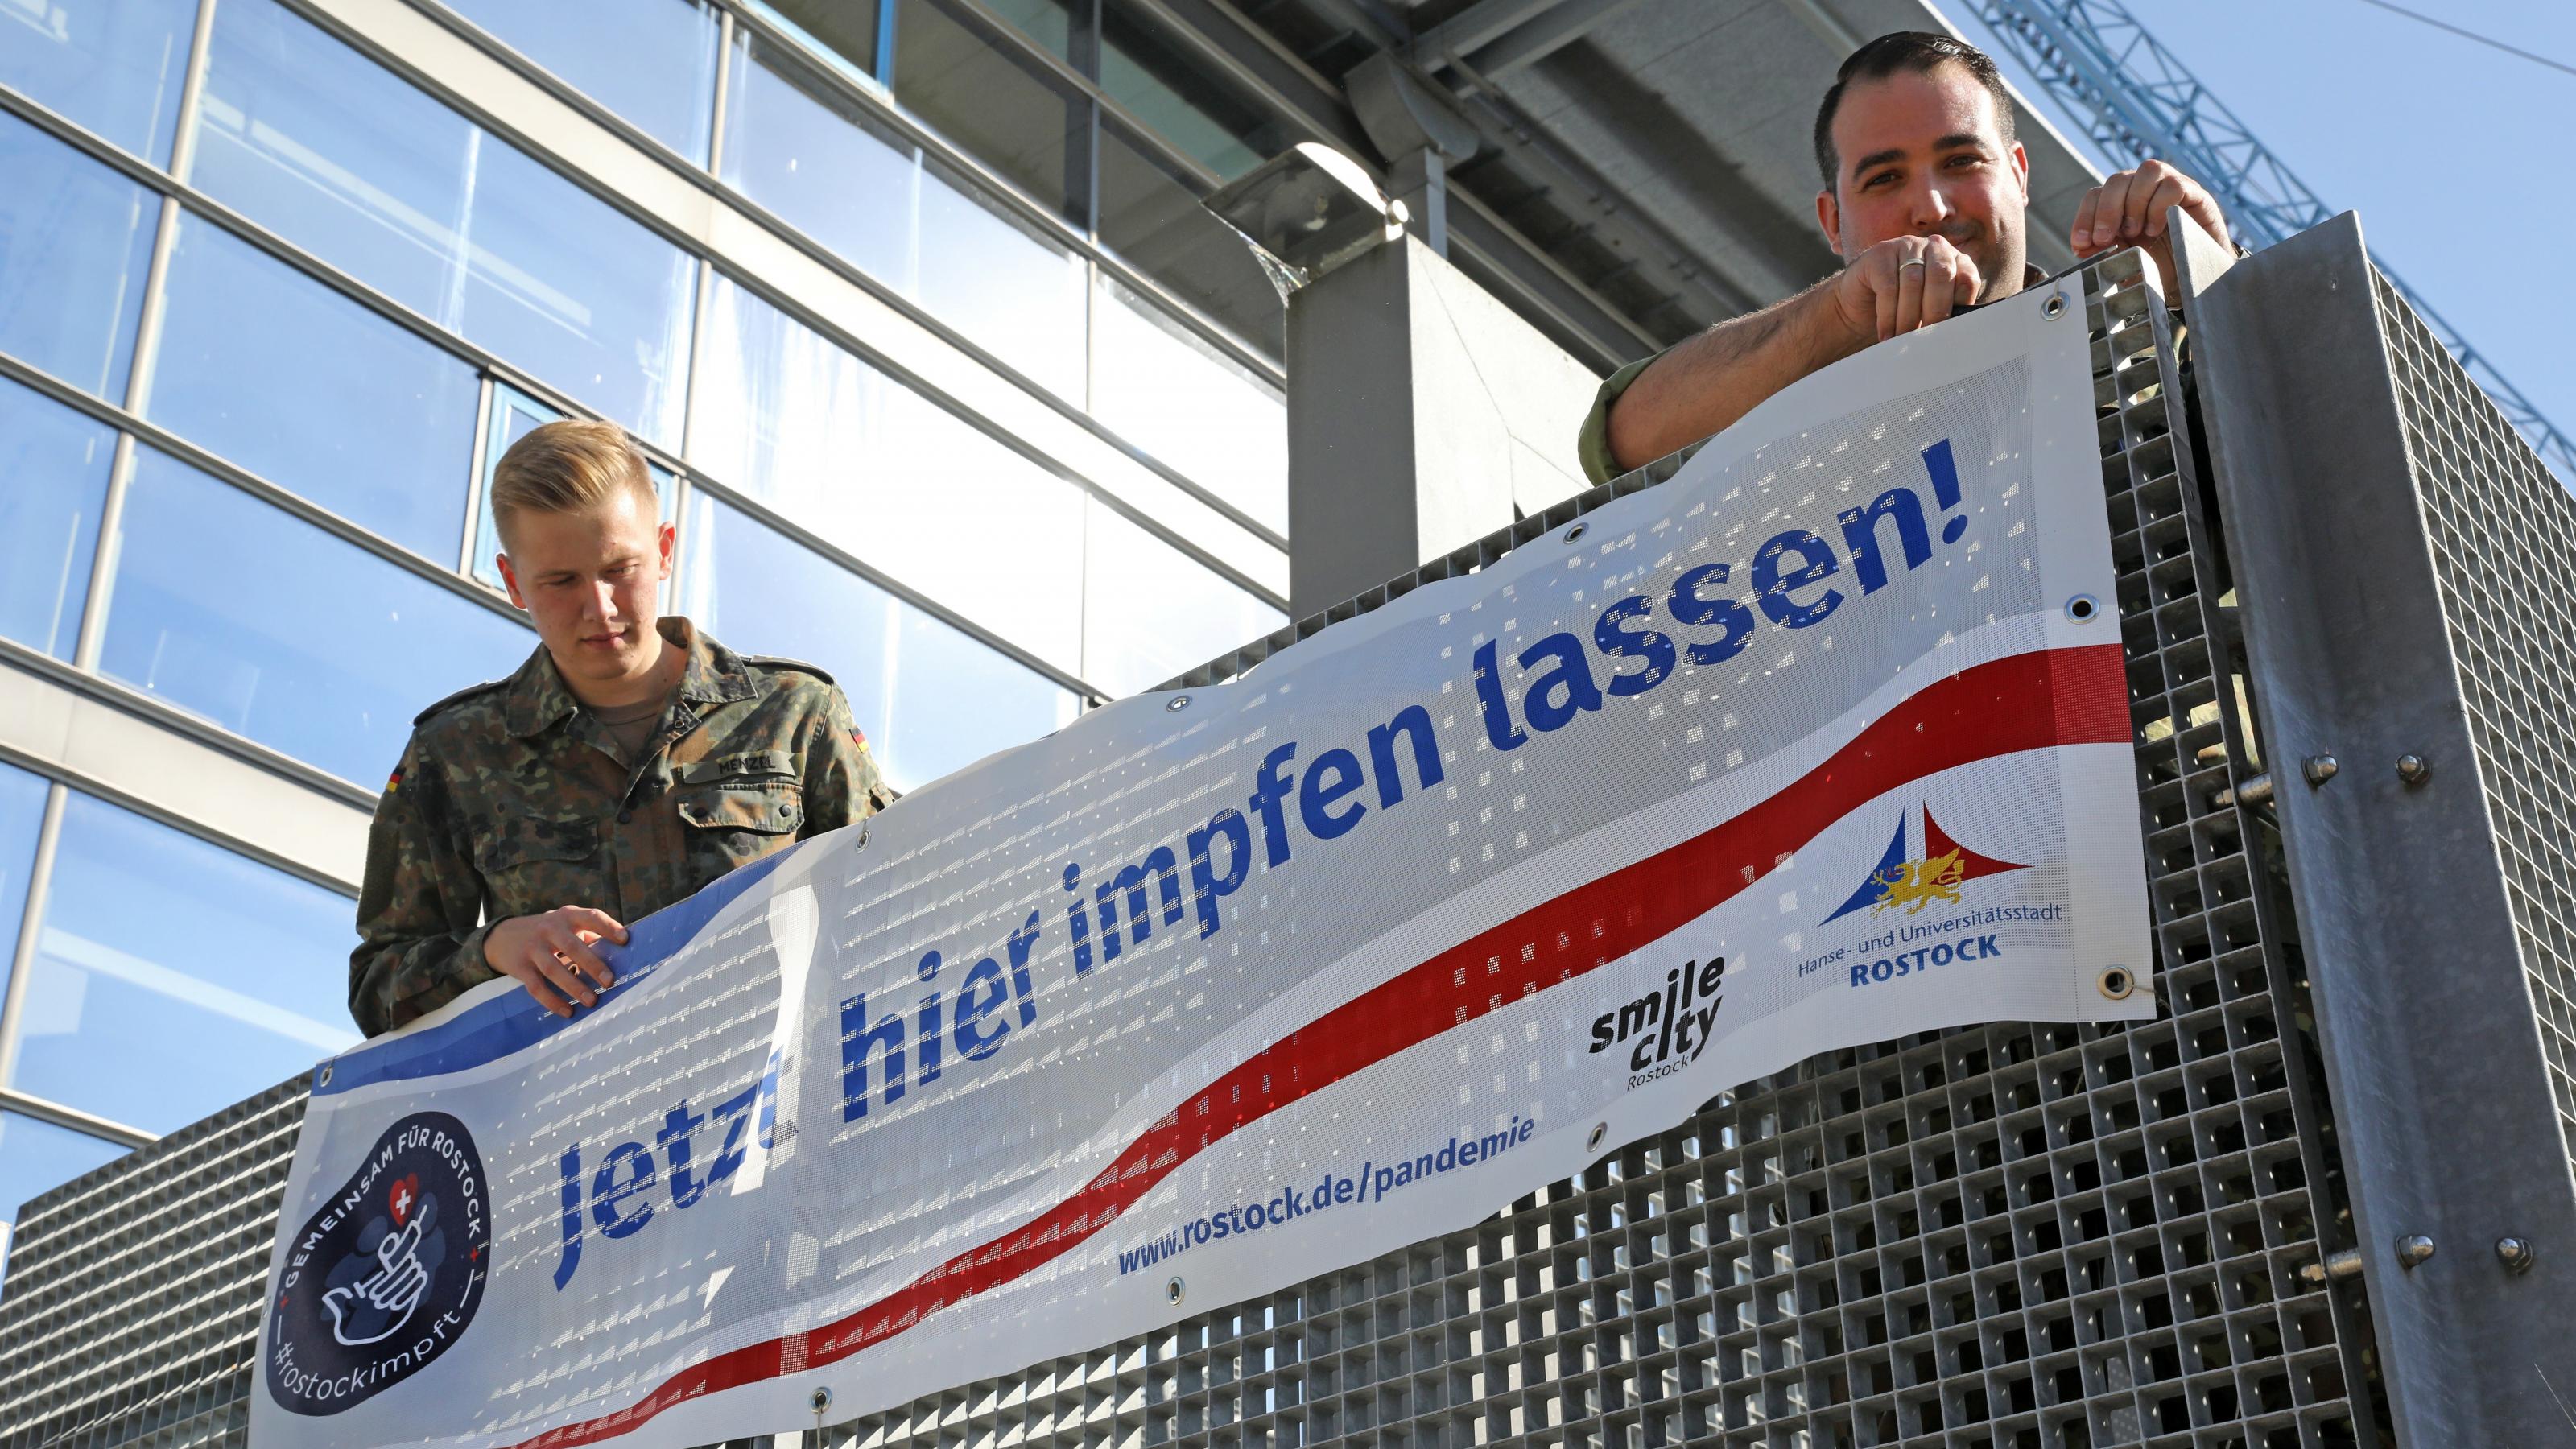 Impfaktion in Rostock: Helfer hängen ein Plakat für Corona-Impfung auf.